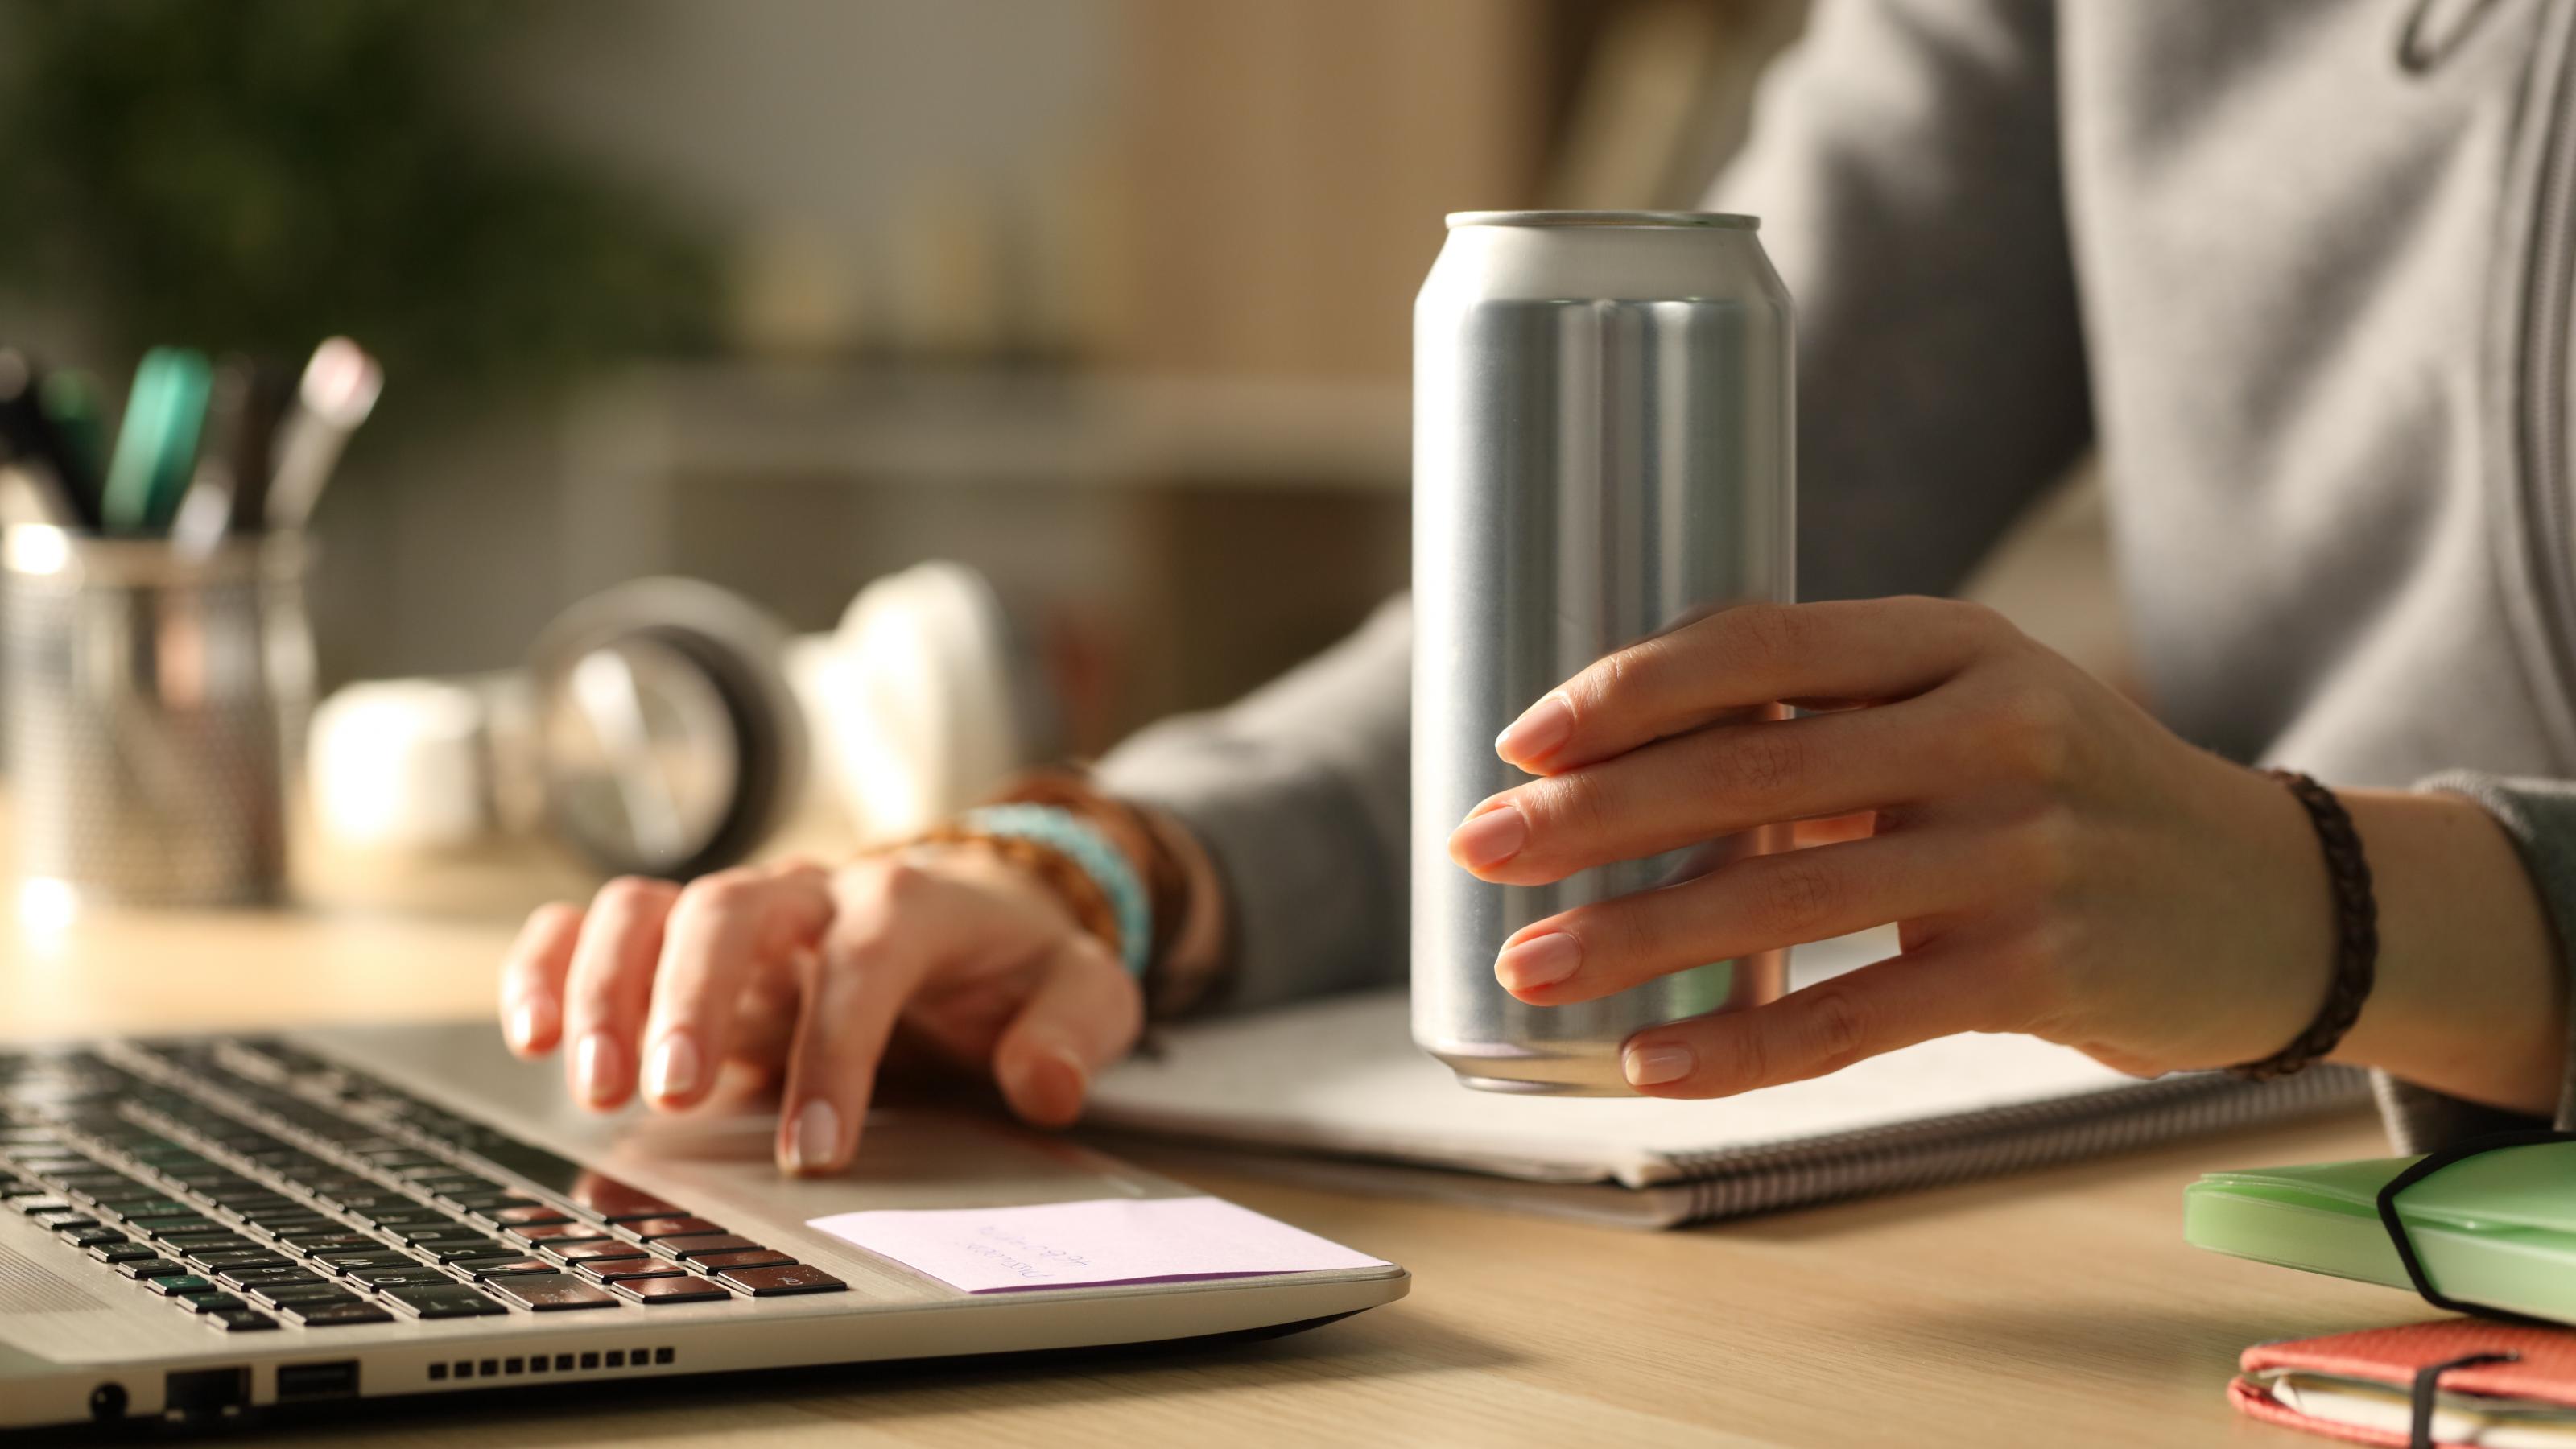 Großaufnahme von Frauenhänden mit Energy-Drink-Dose und Laptop auf dem Schreibtisch